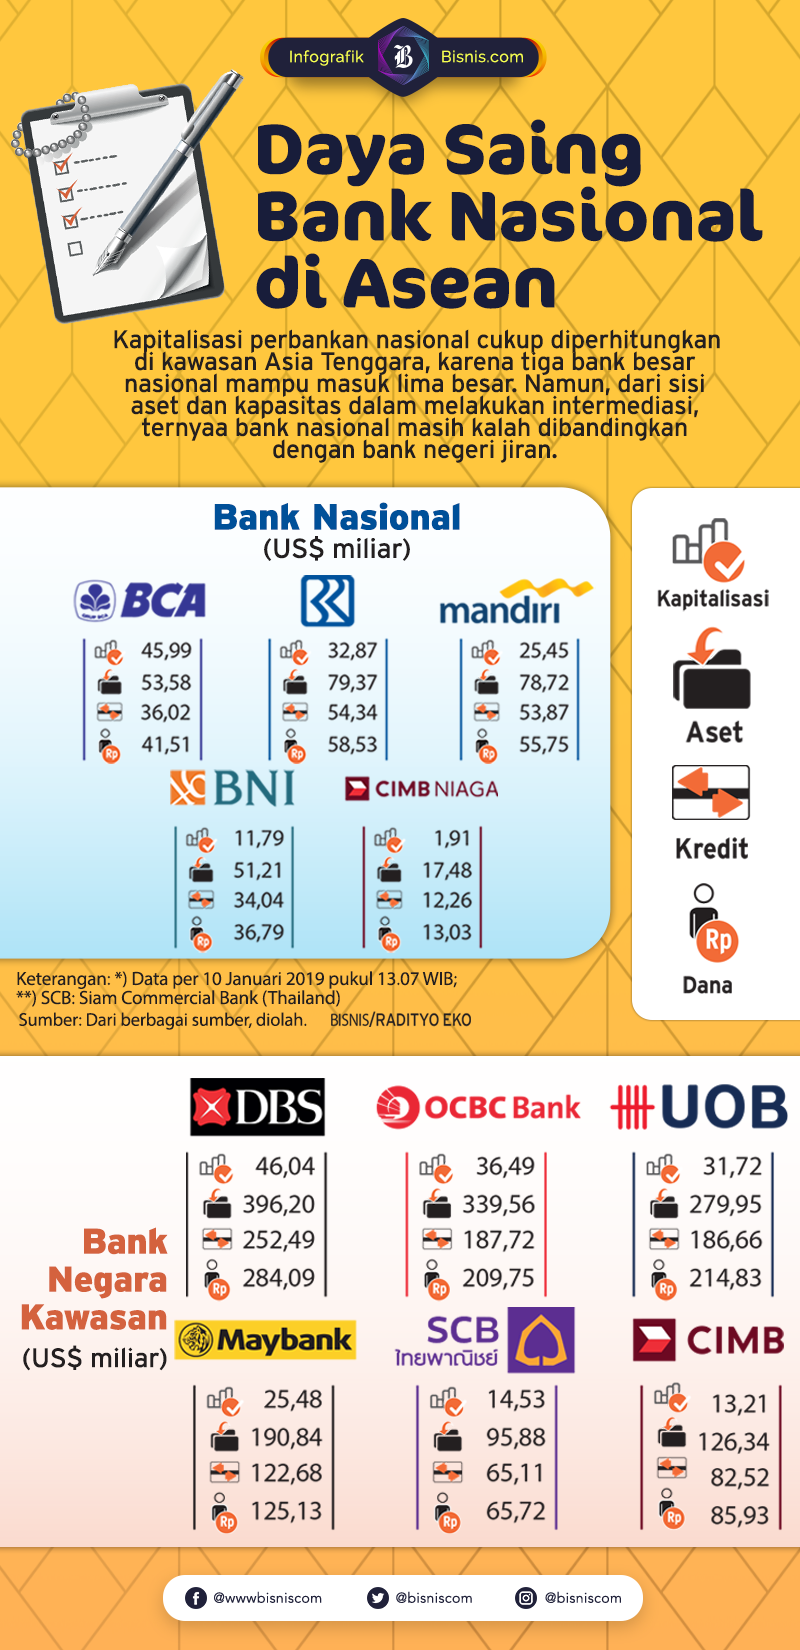  Bank di Indonesia masih Kalah Saing Dari Segi Fungsi Intermediasi